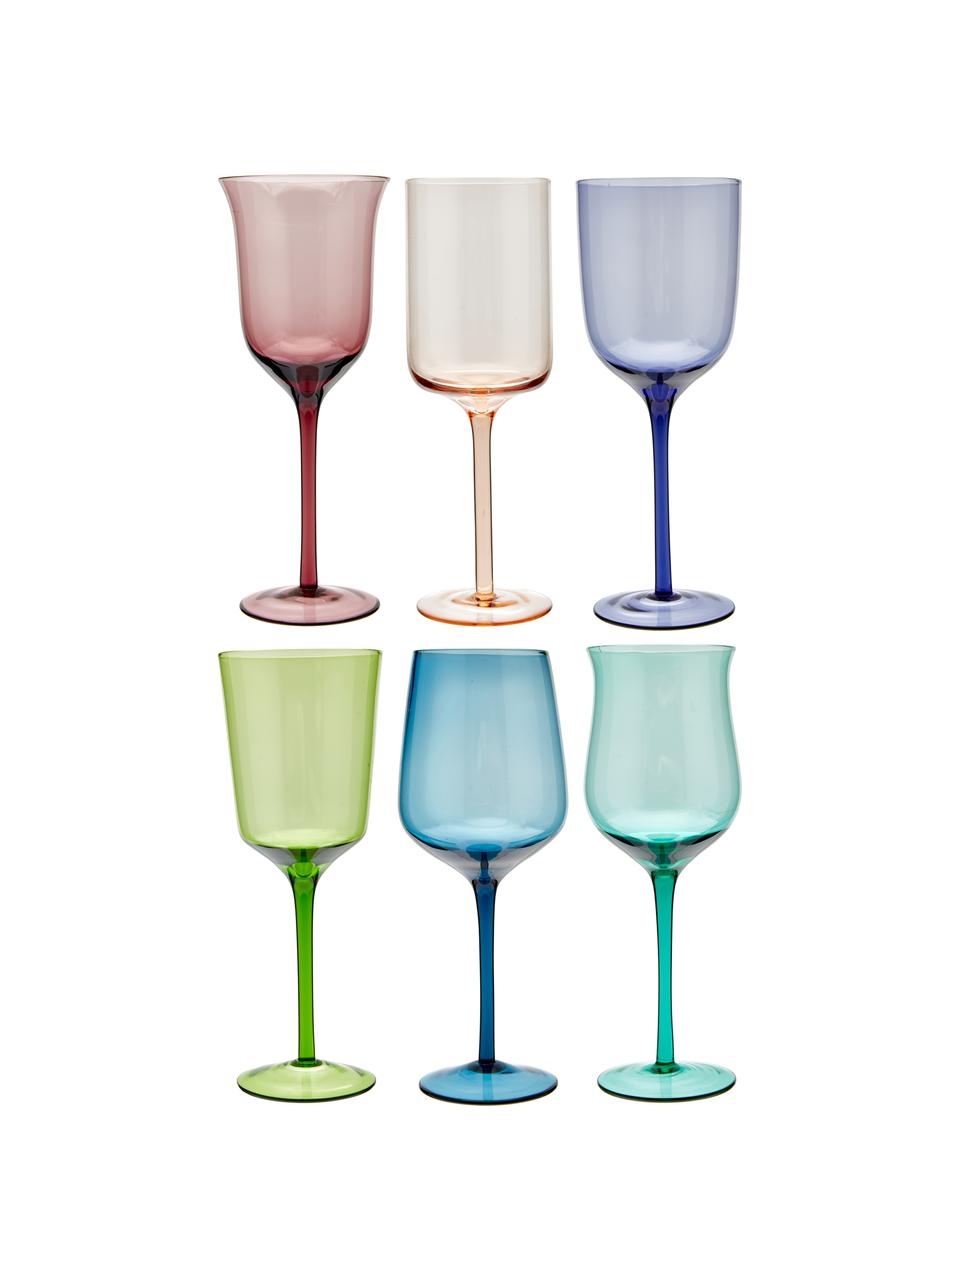 Mundgeblasene Weingläser Diseguale in unterschiedlichen Farben und Formen, 6 Stück, Glas, mundgeblasen, Mehrfarbig, Ø 7 x H 24 cm, 250 ml